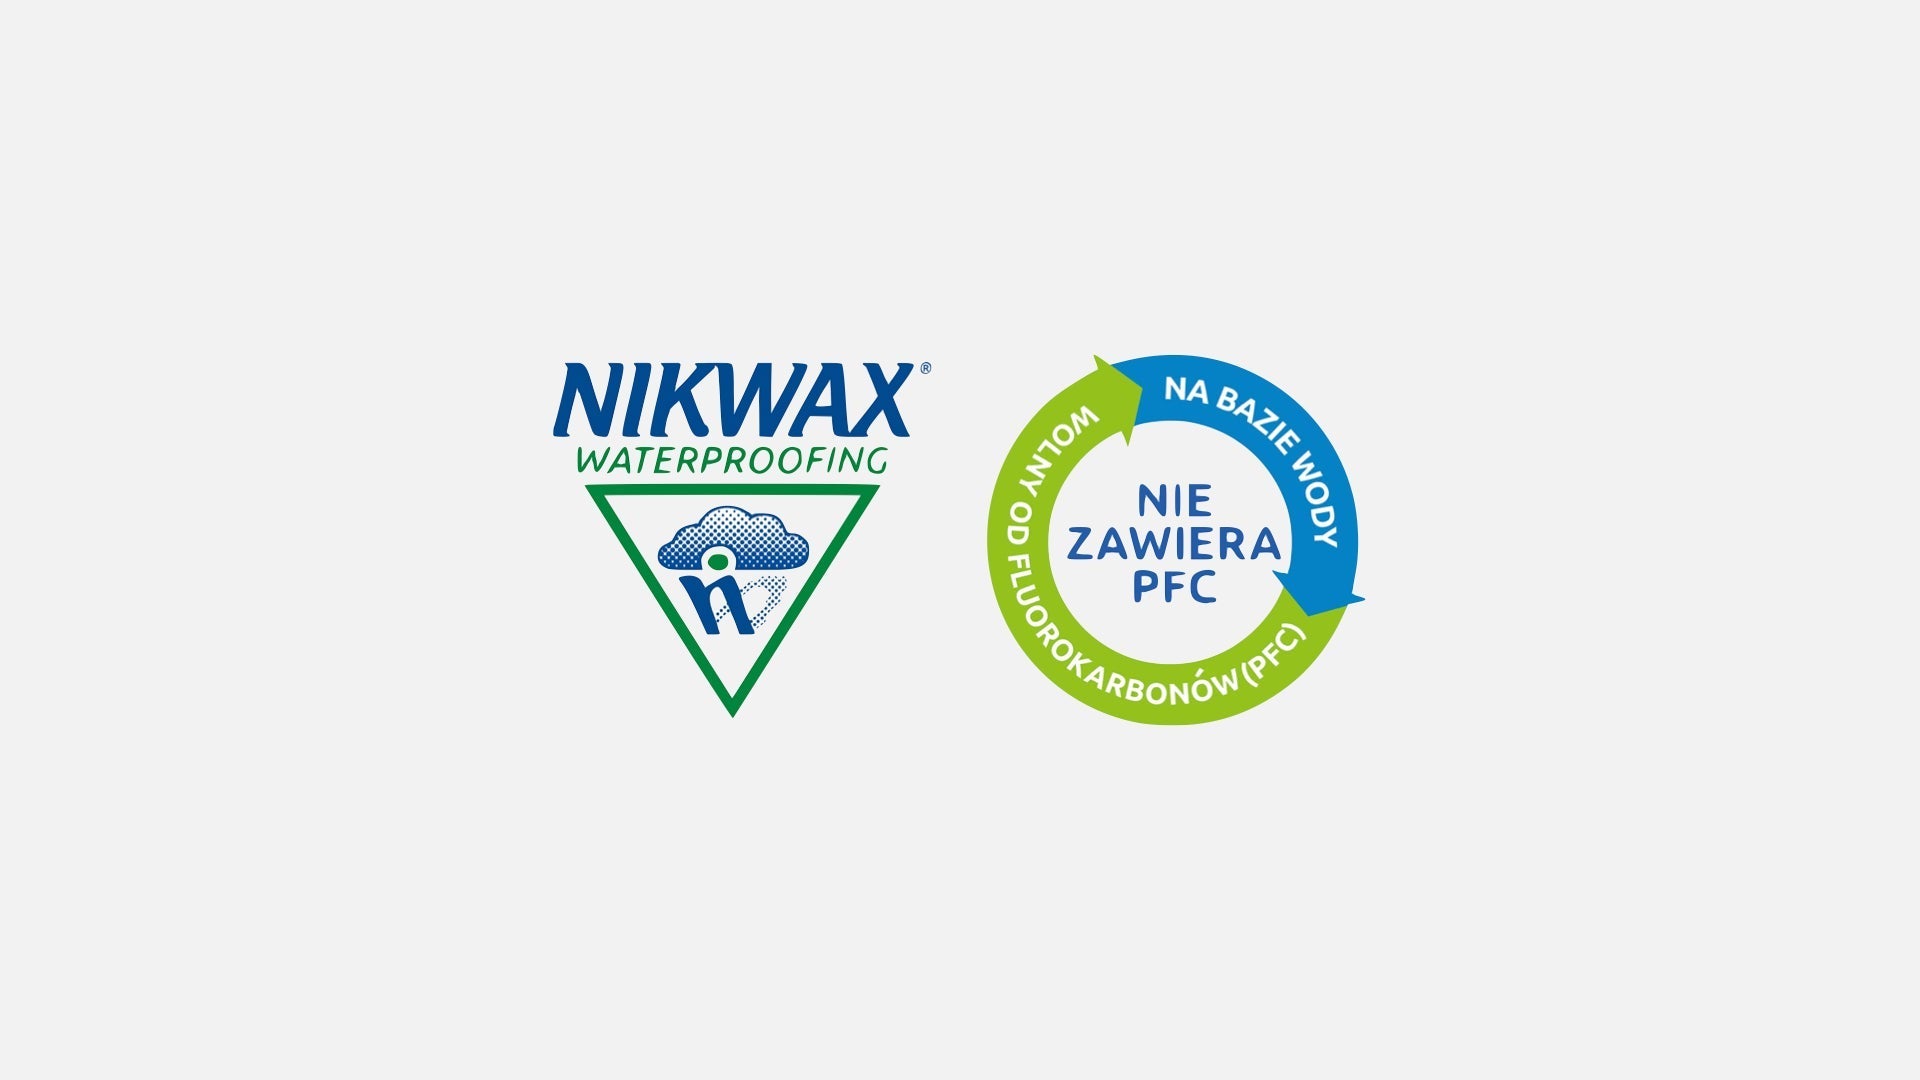 Nikwax - TX.Direct® Wash-In 5 літрів водонепроникного засобу для одягу